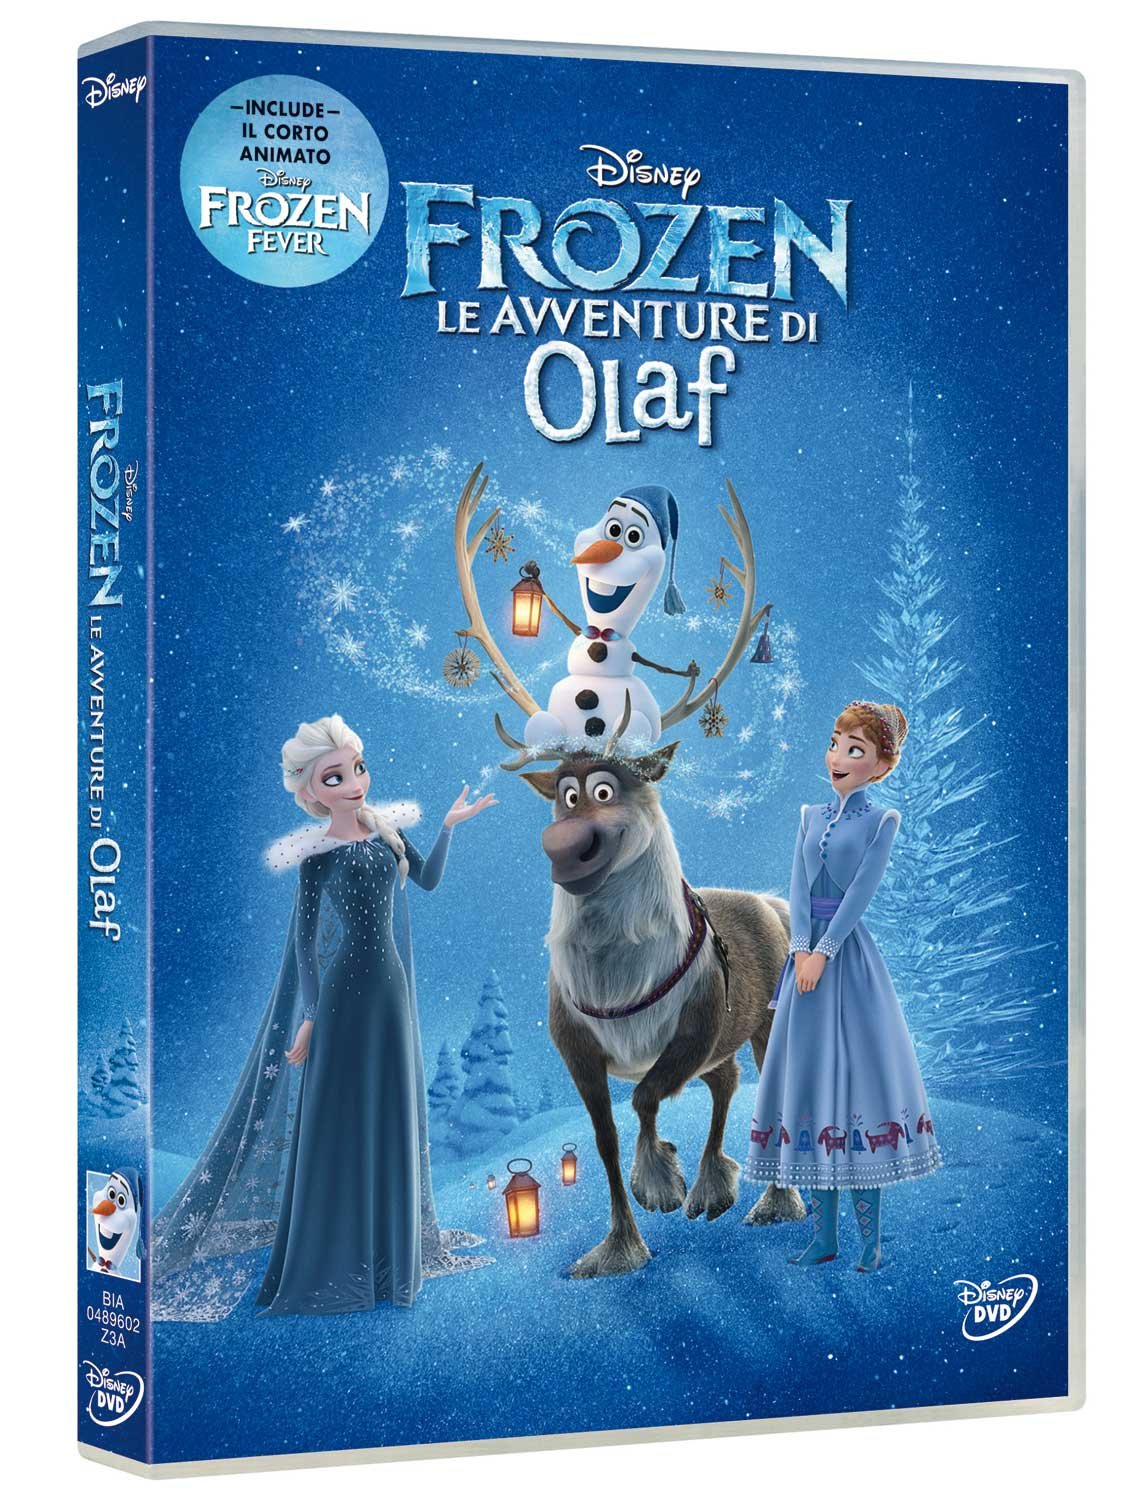 Le Avventure di Olaf (DVD)